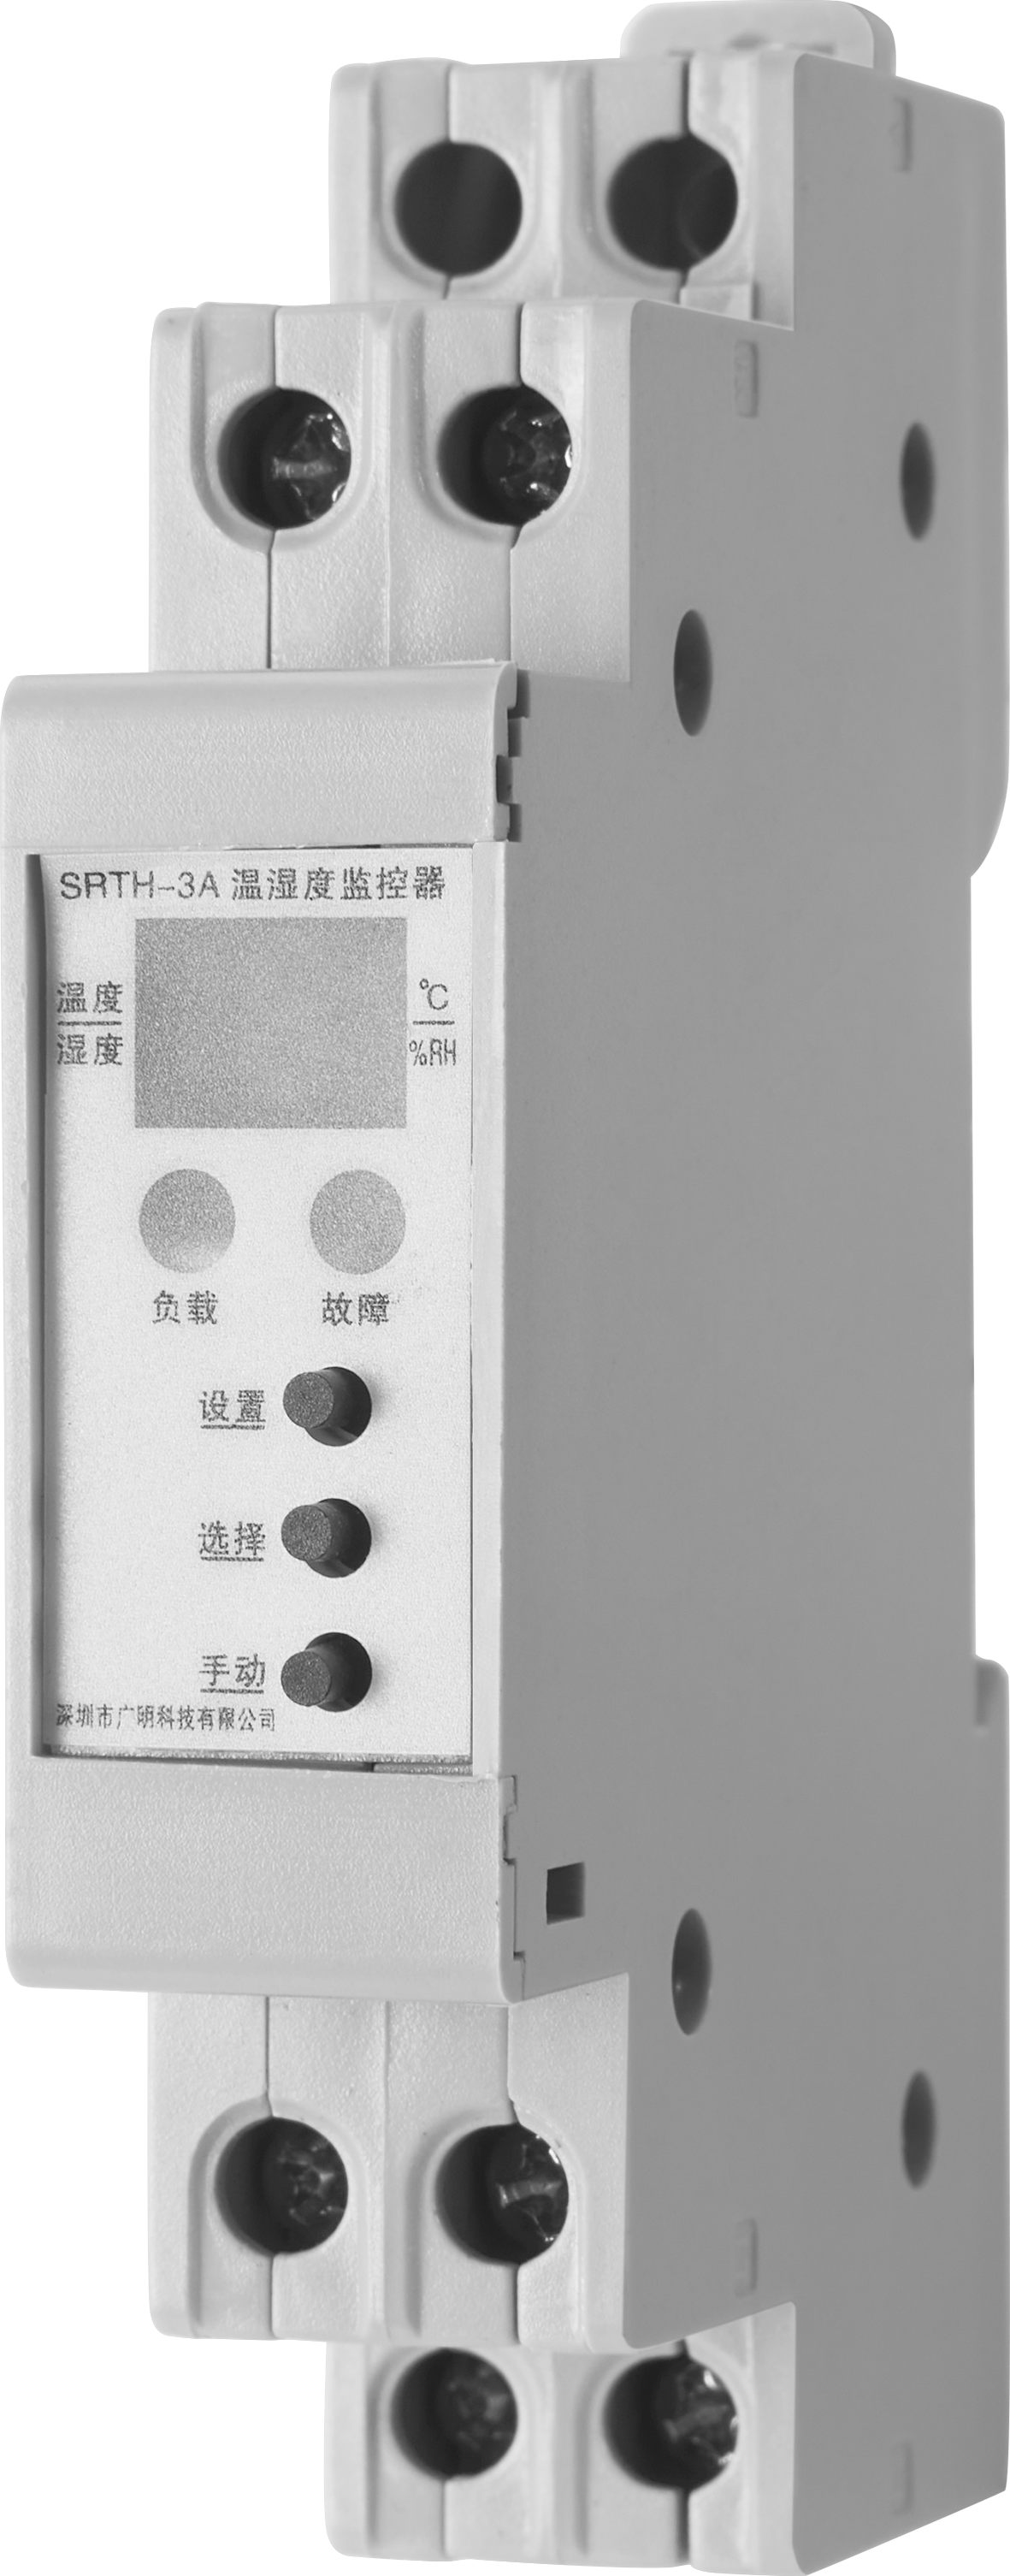 SRTH3A温湿度监控装置